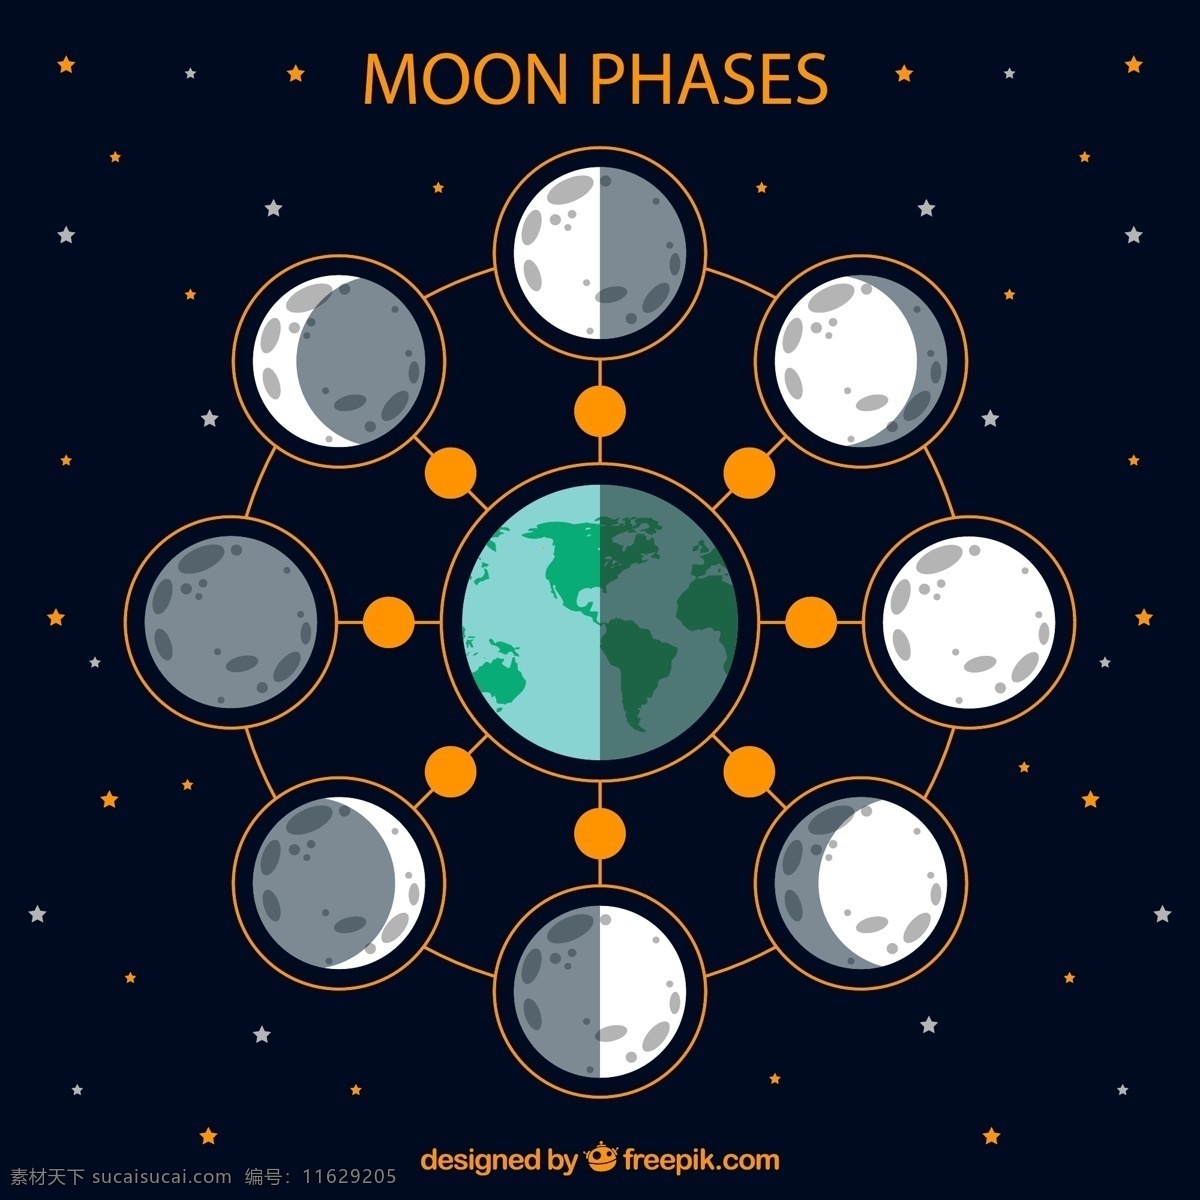 月相 变化图 矢量 星星 天文 新月 上弦 满月 高清图片